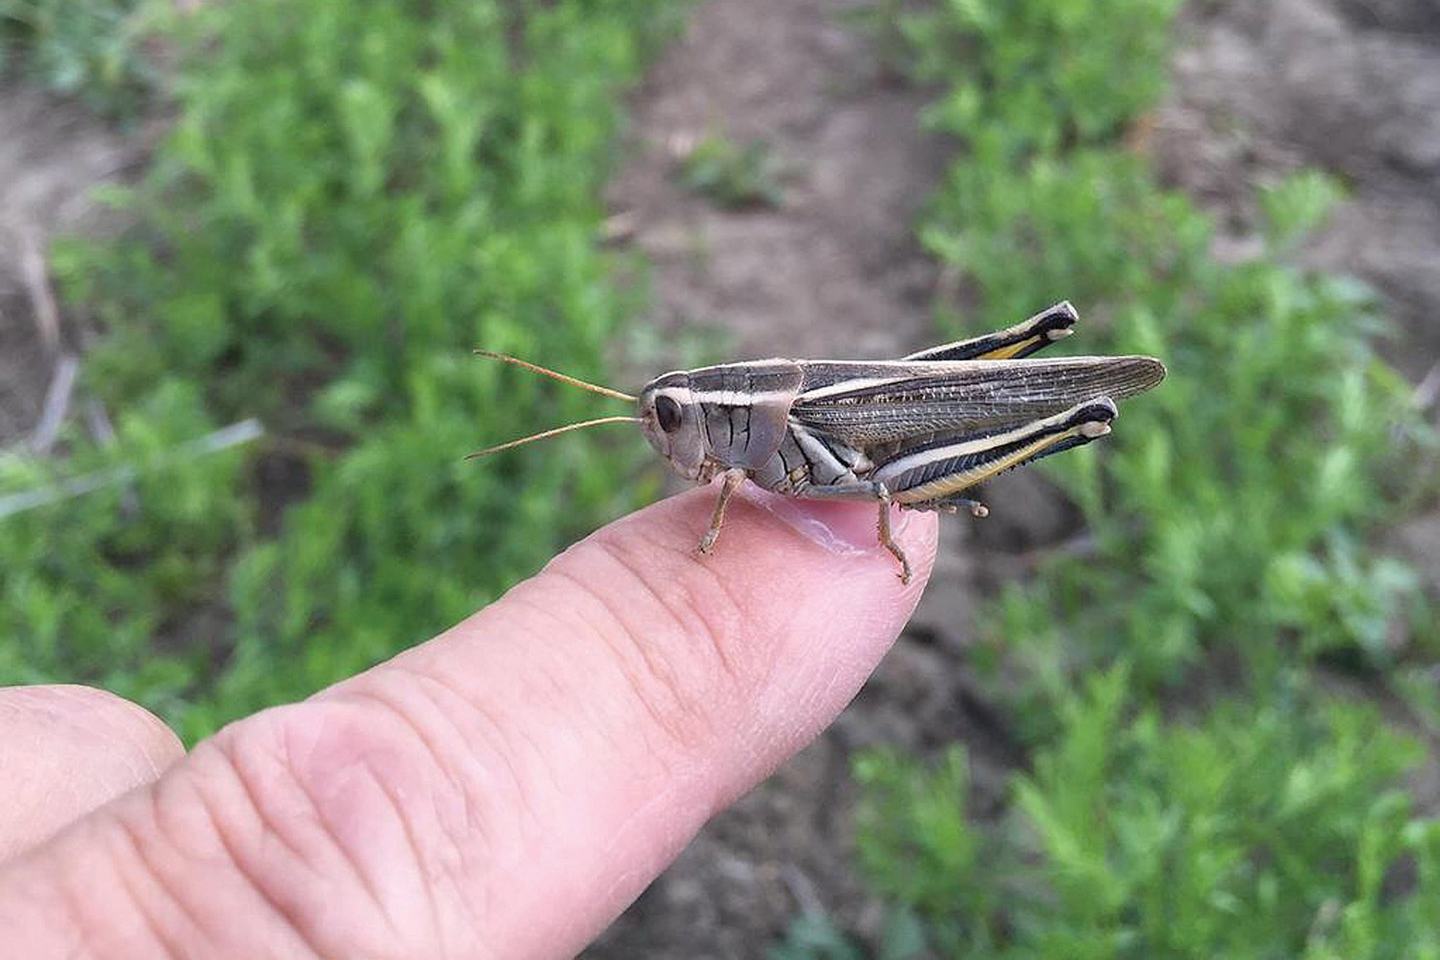 Grasshopper held on a finger